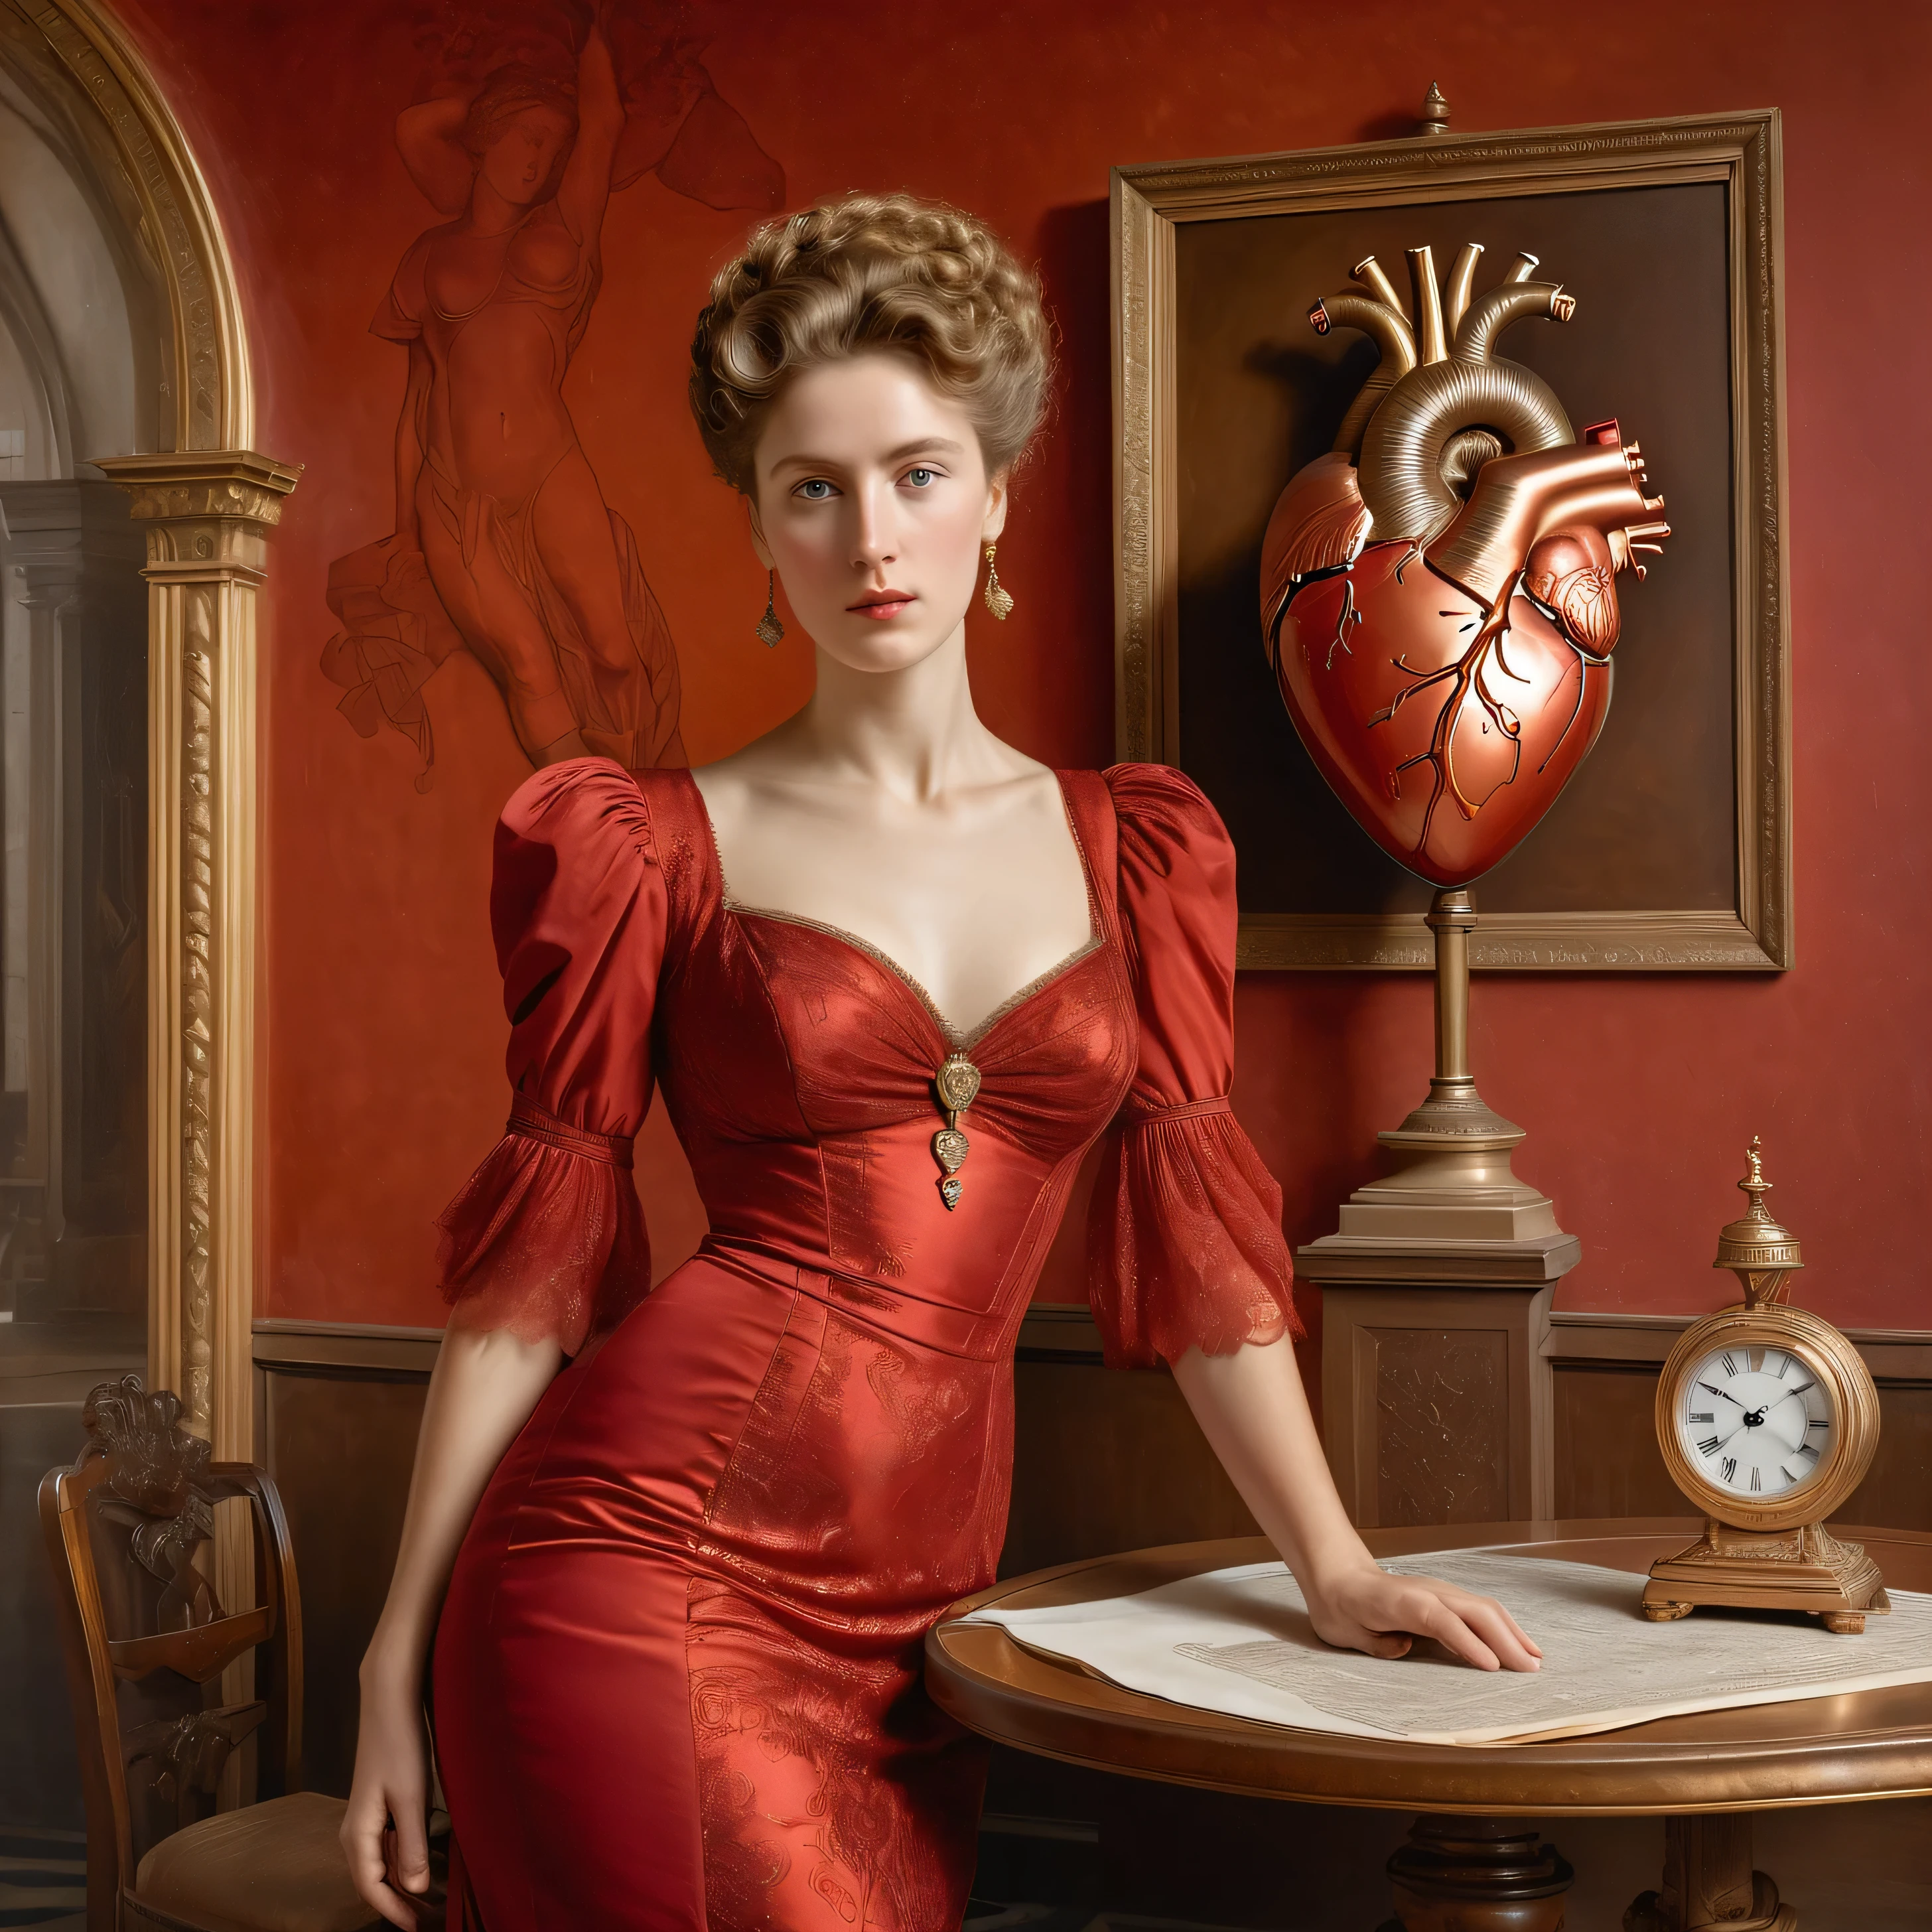 สไตล์โดยอัลเบิร์ต โจเซฟ มัวร์, ลูกตุ้มทองแดงของนาฬิกาเก่าขนาดใหญ่ส่องแสงระยิบระยับ, (((ภาพผู้หญิงในชุดสีแดงยืนอยู่บนโต๊ะ))), ((ภาพวาดทางกายวิภาคของหัวใจมนุษย์บนผนัง)), ผลงานชิ้นเอก, การถ่ายภาพที่สมจริง, รายละเอียดมากมาย, องค์ประกอบที่สมบูรณ์, ใกล้ชิด,